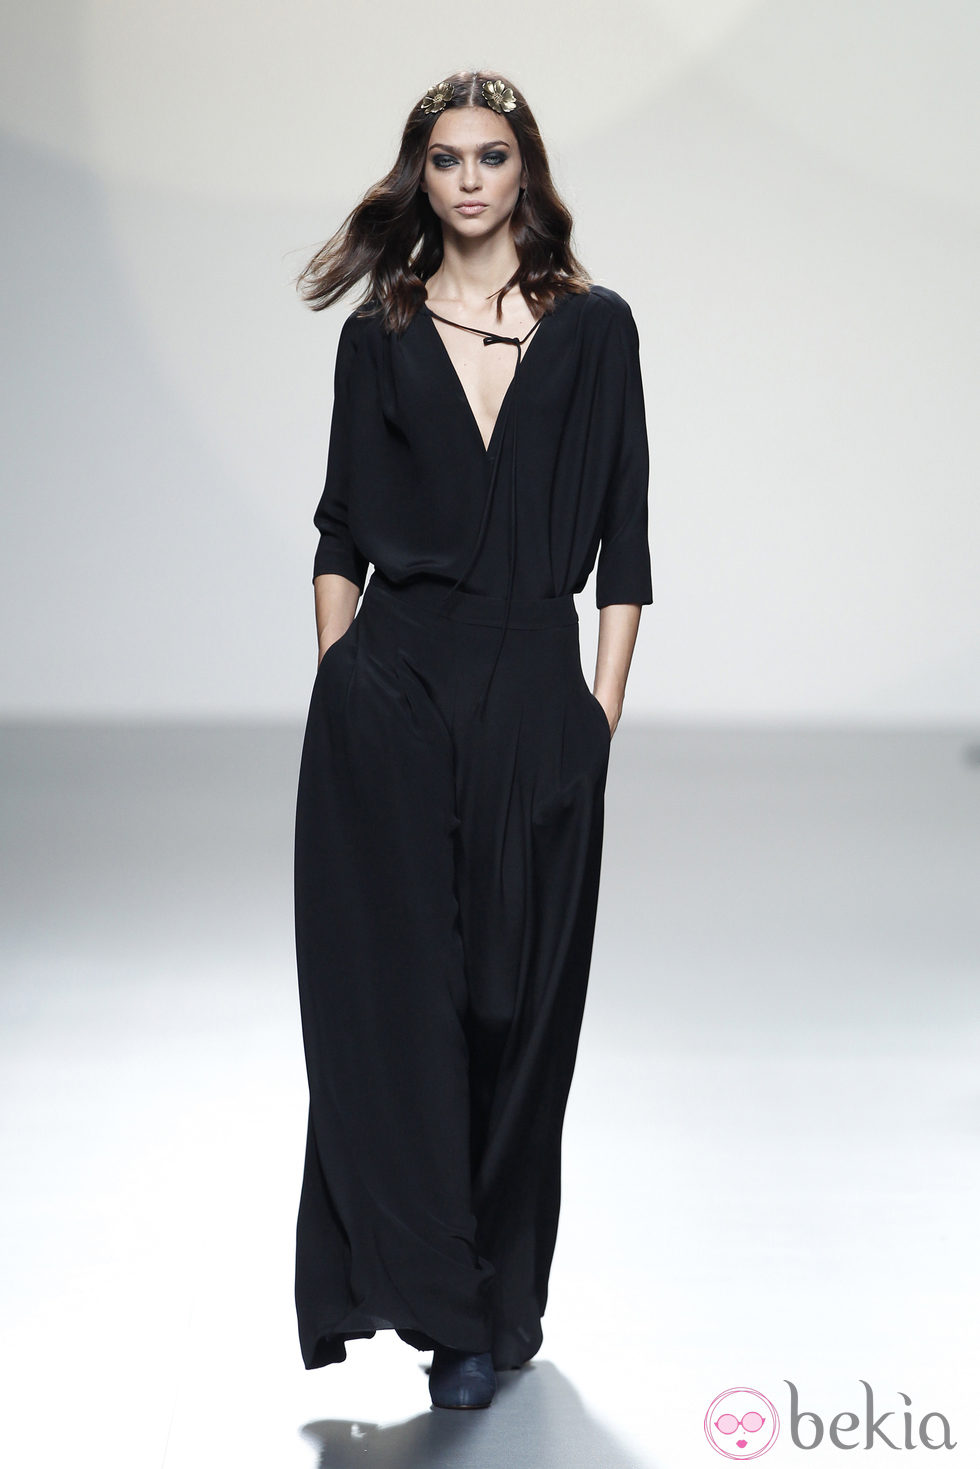 Vestido negro manga francesa de la colección primavera/verano 2014 de Teresa Helbig en Madrid Fashion Week